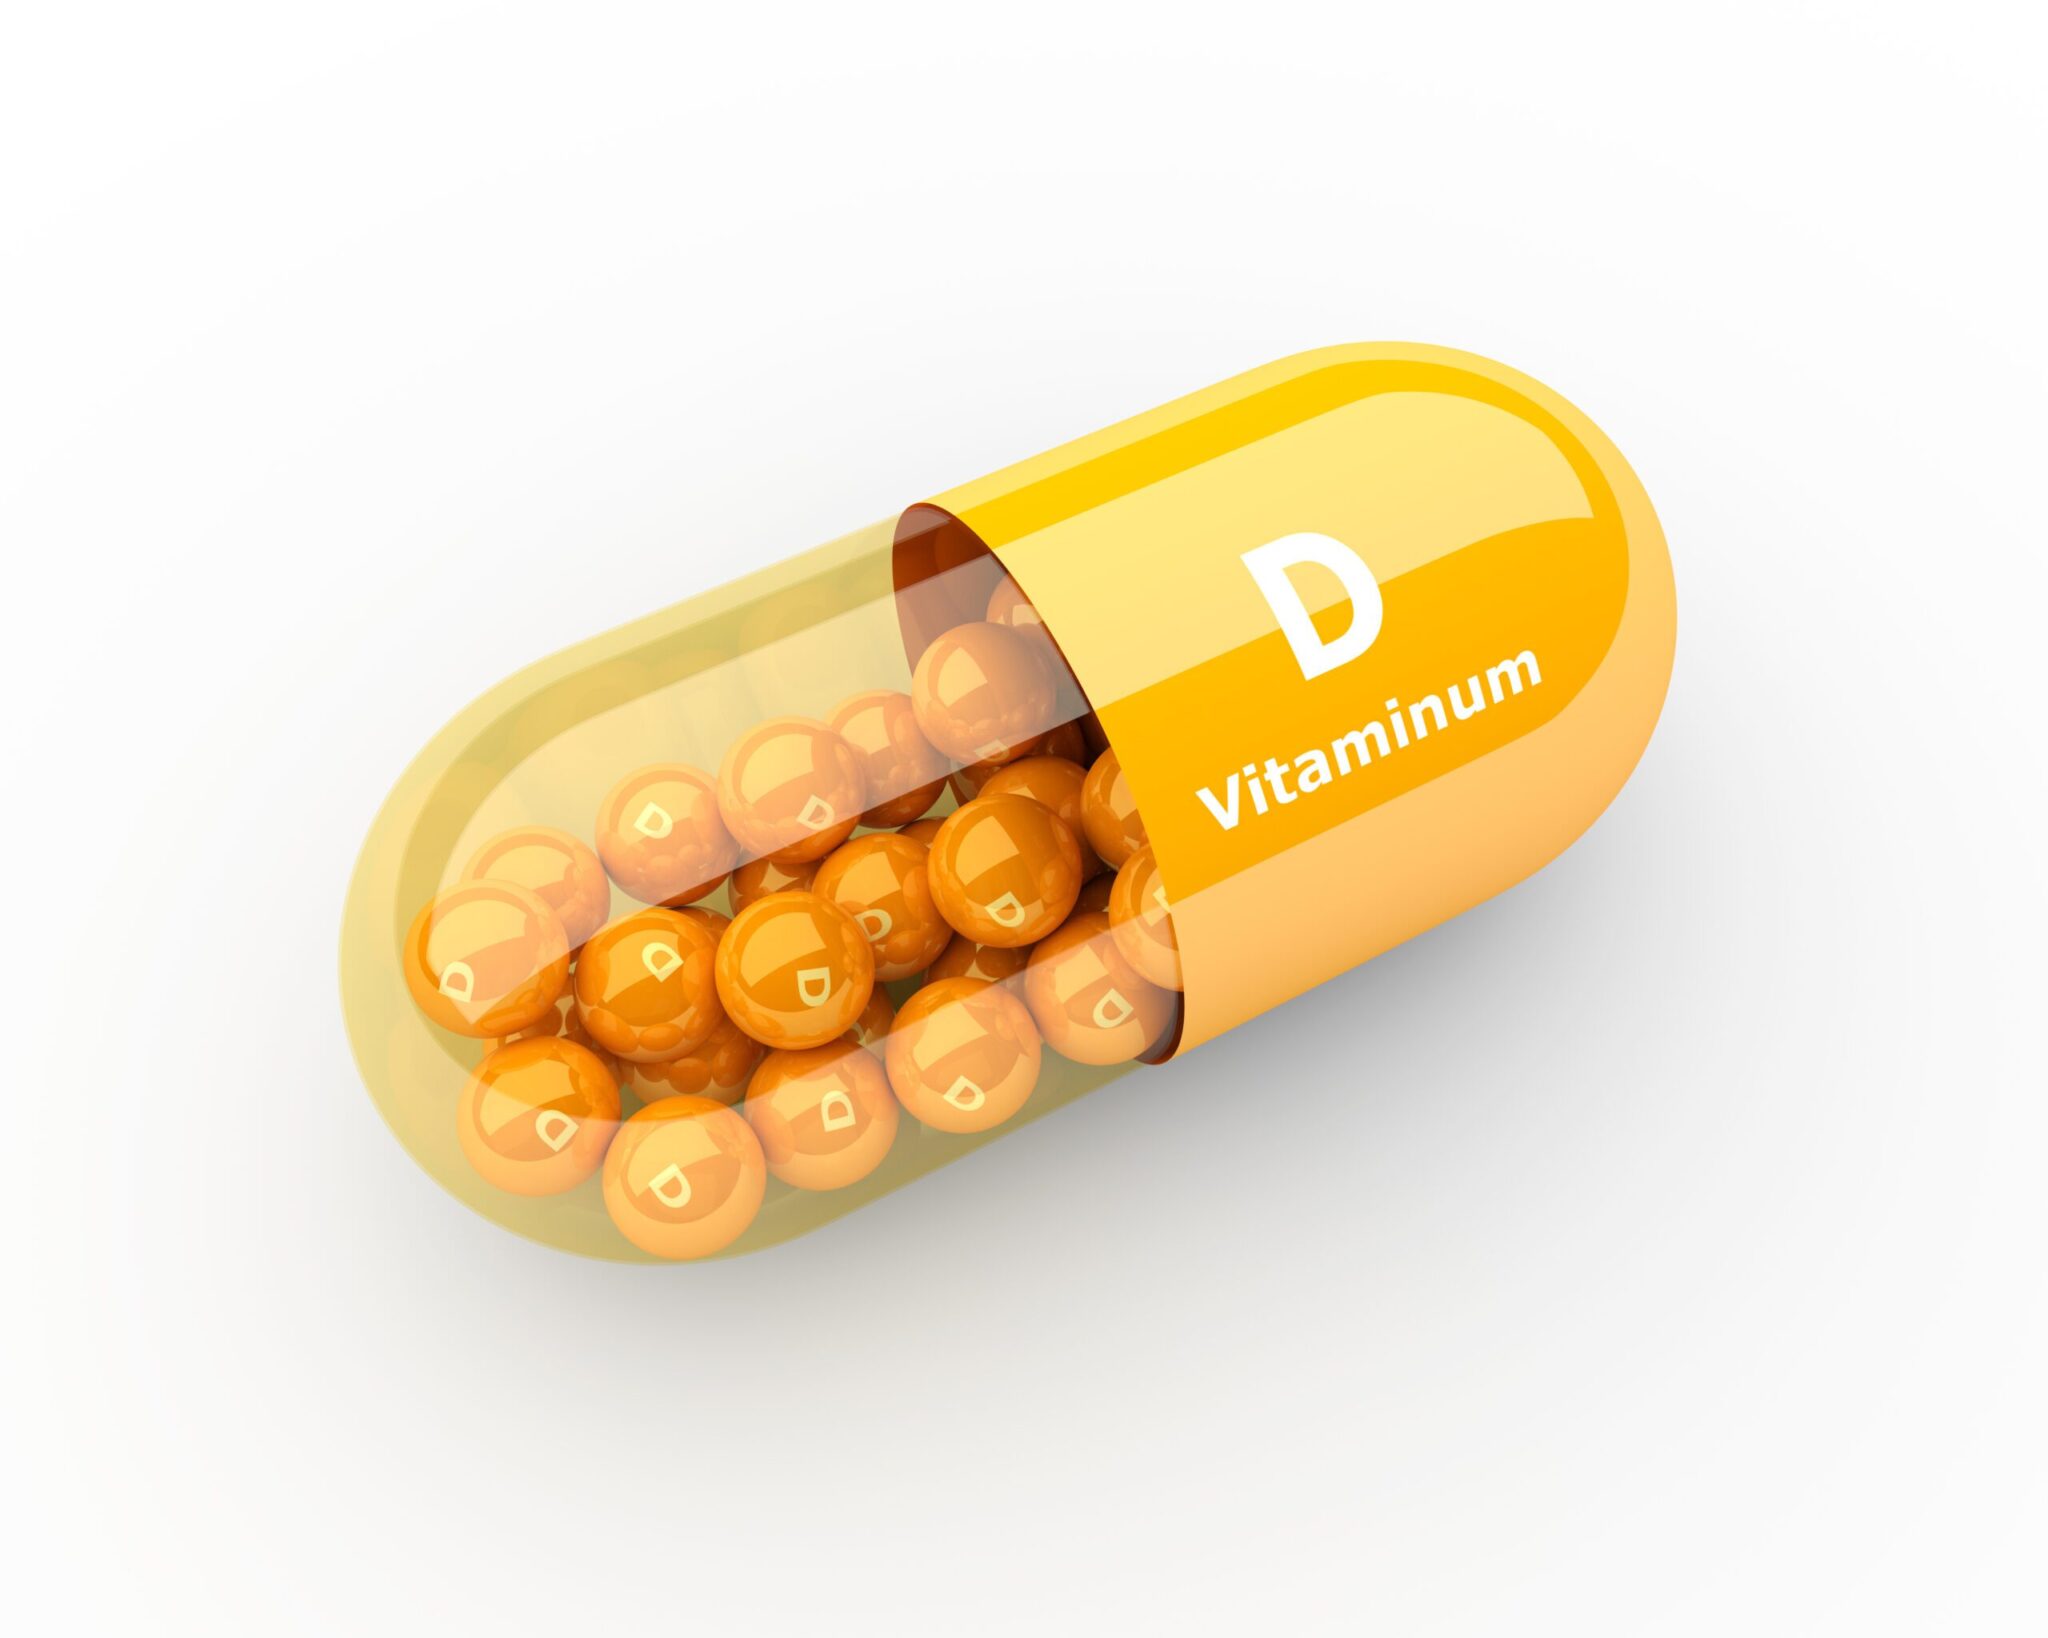 Vitamina D3 scaled scaled